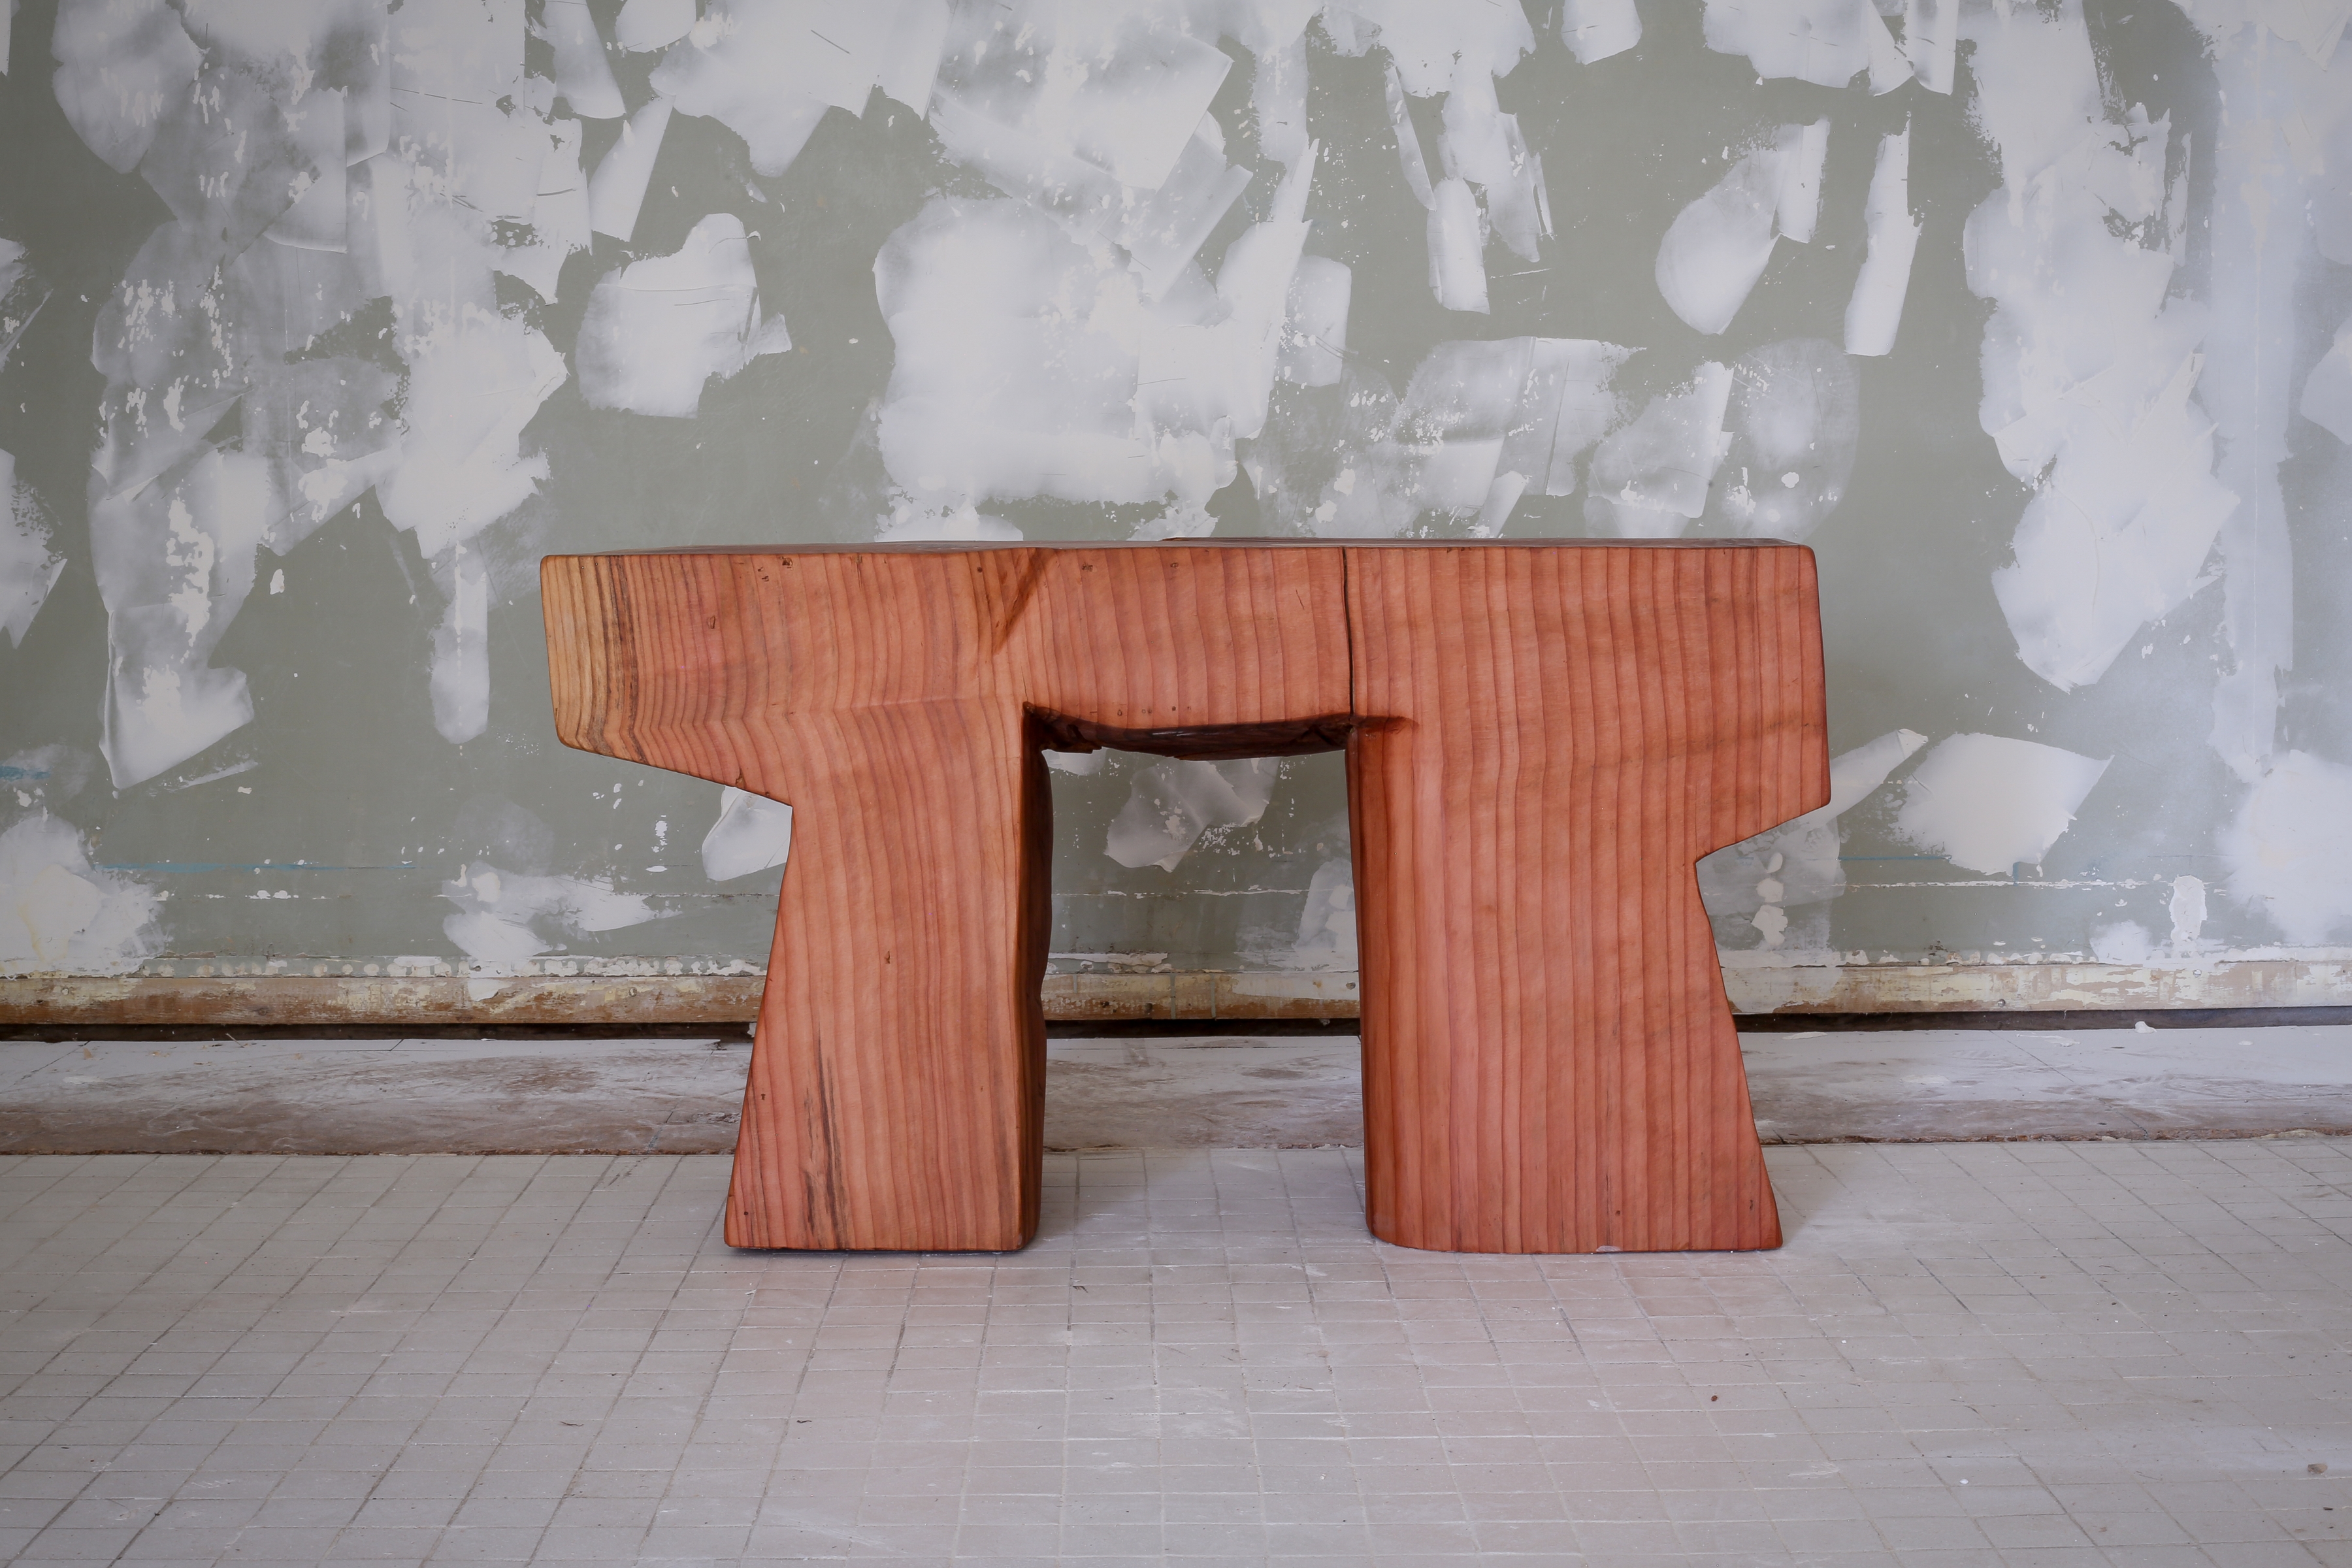 Aurora Table, 2021
wood (sequoia)
19h x 12w x 34 1/2d in
48.26h x 30.48w x 87.63d cm
VS_2021_0029
&amp;nbsp;